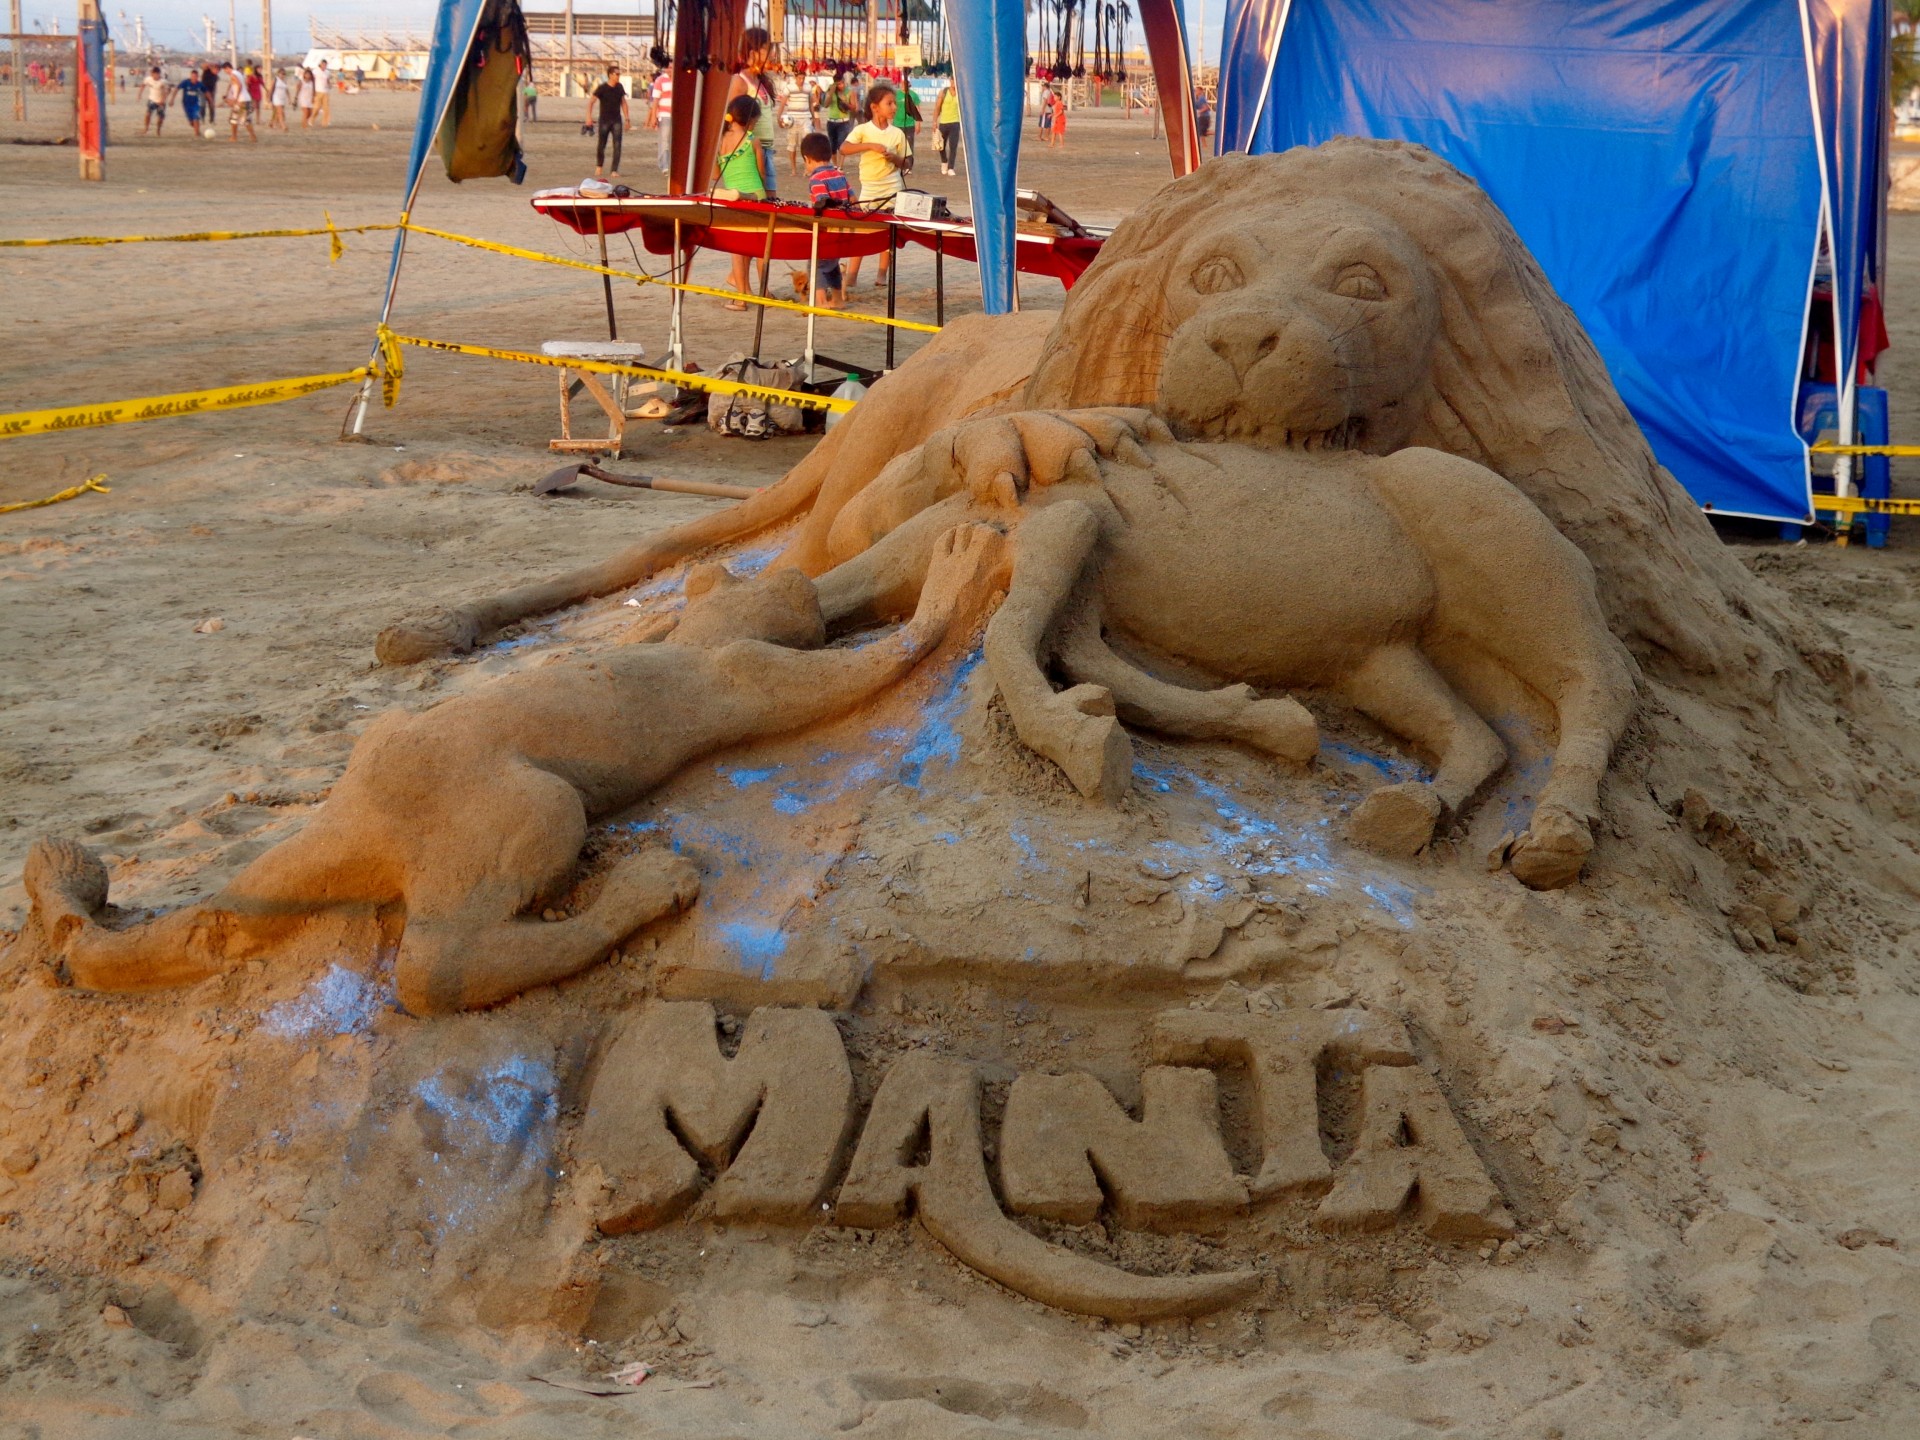 manta ecuador beaches sand sculptures free photo